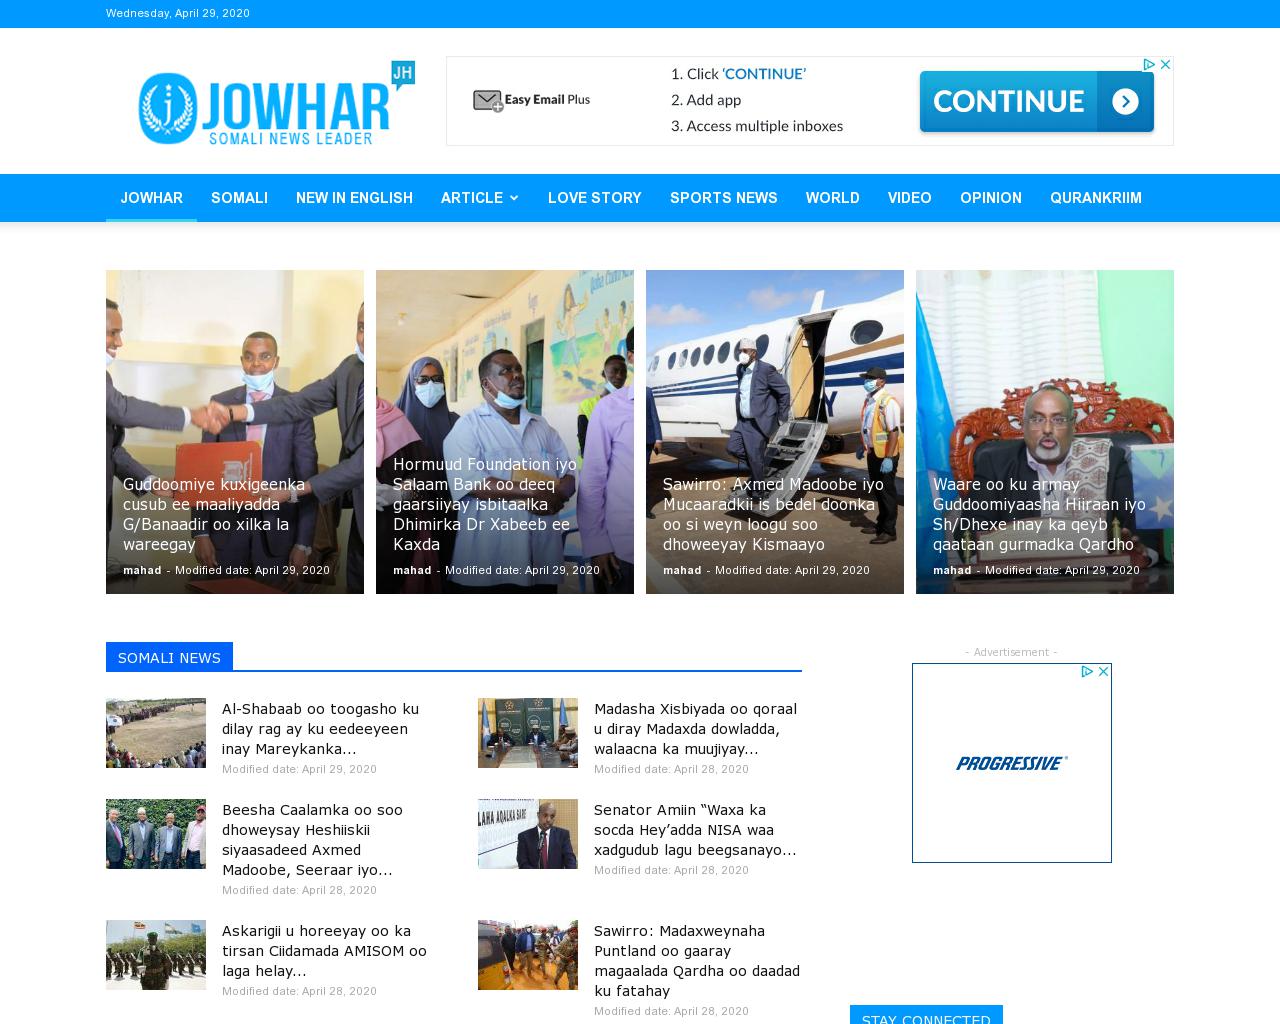 jowhar.com